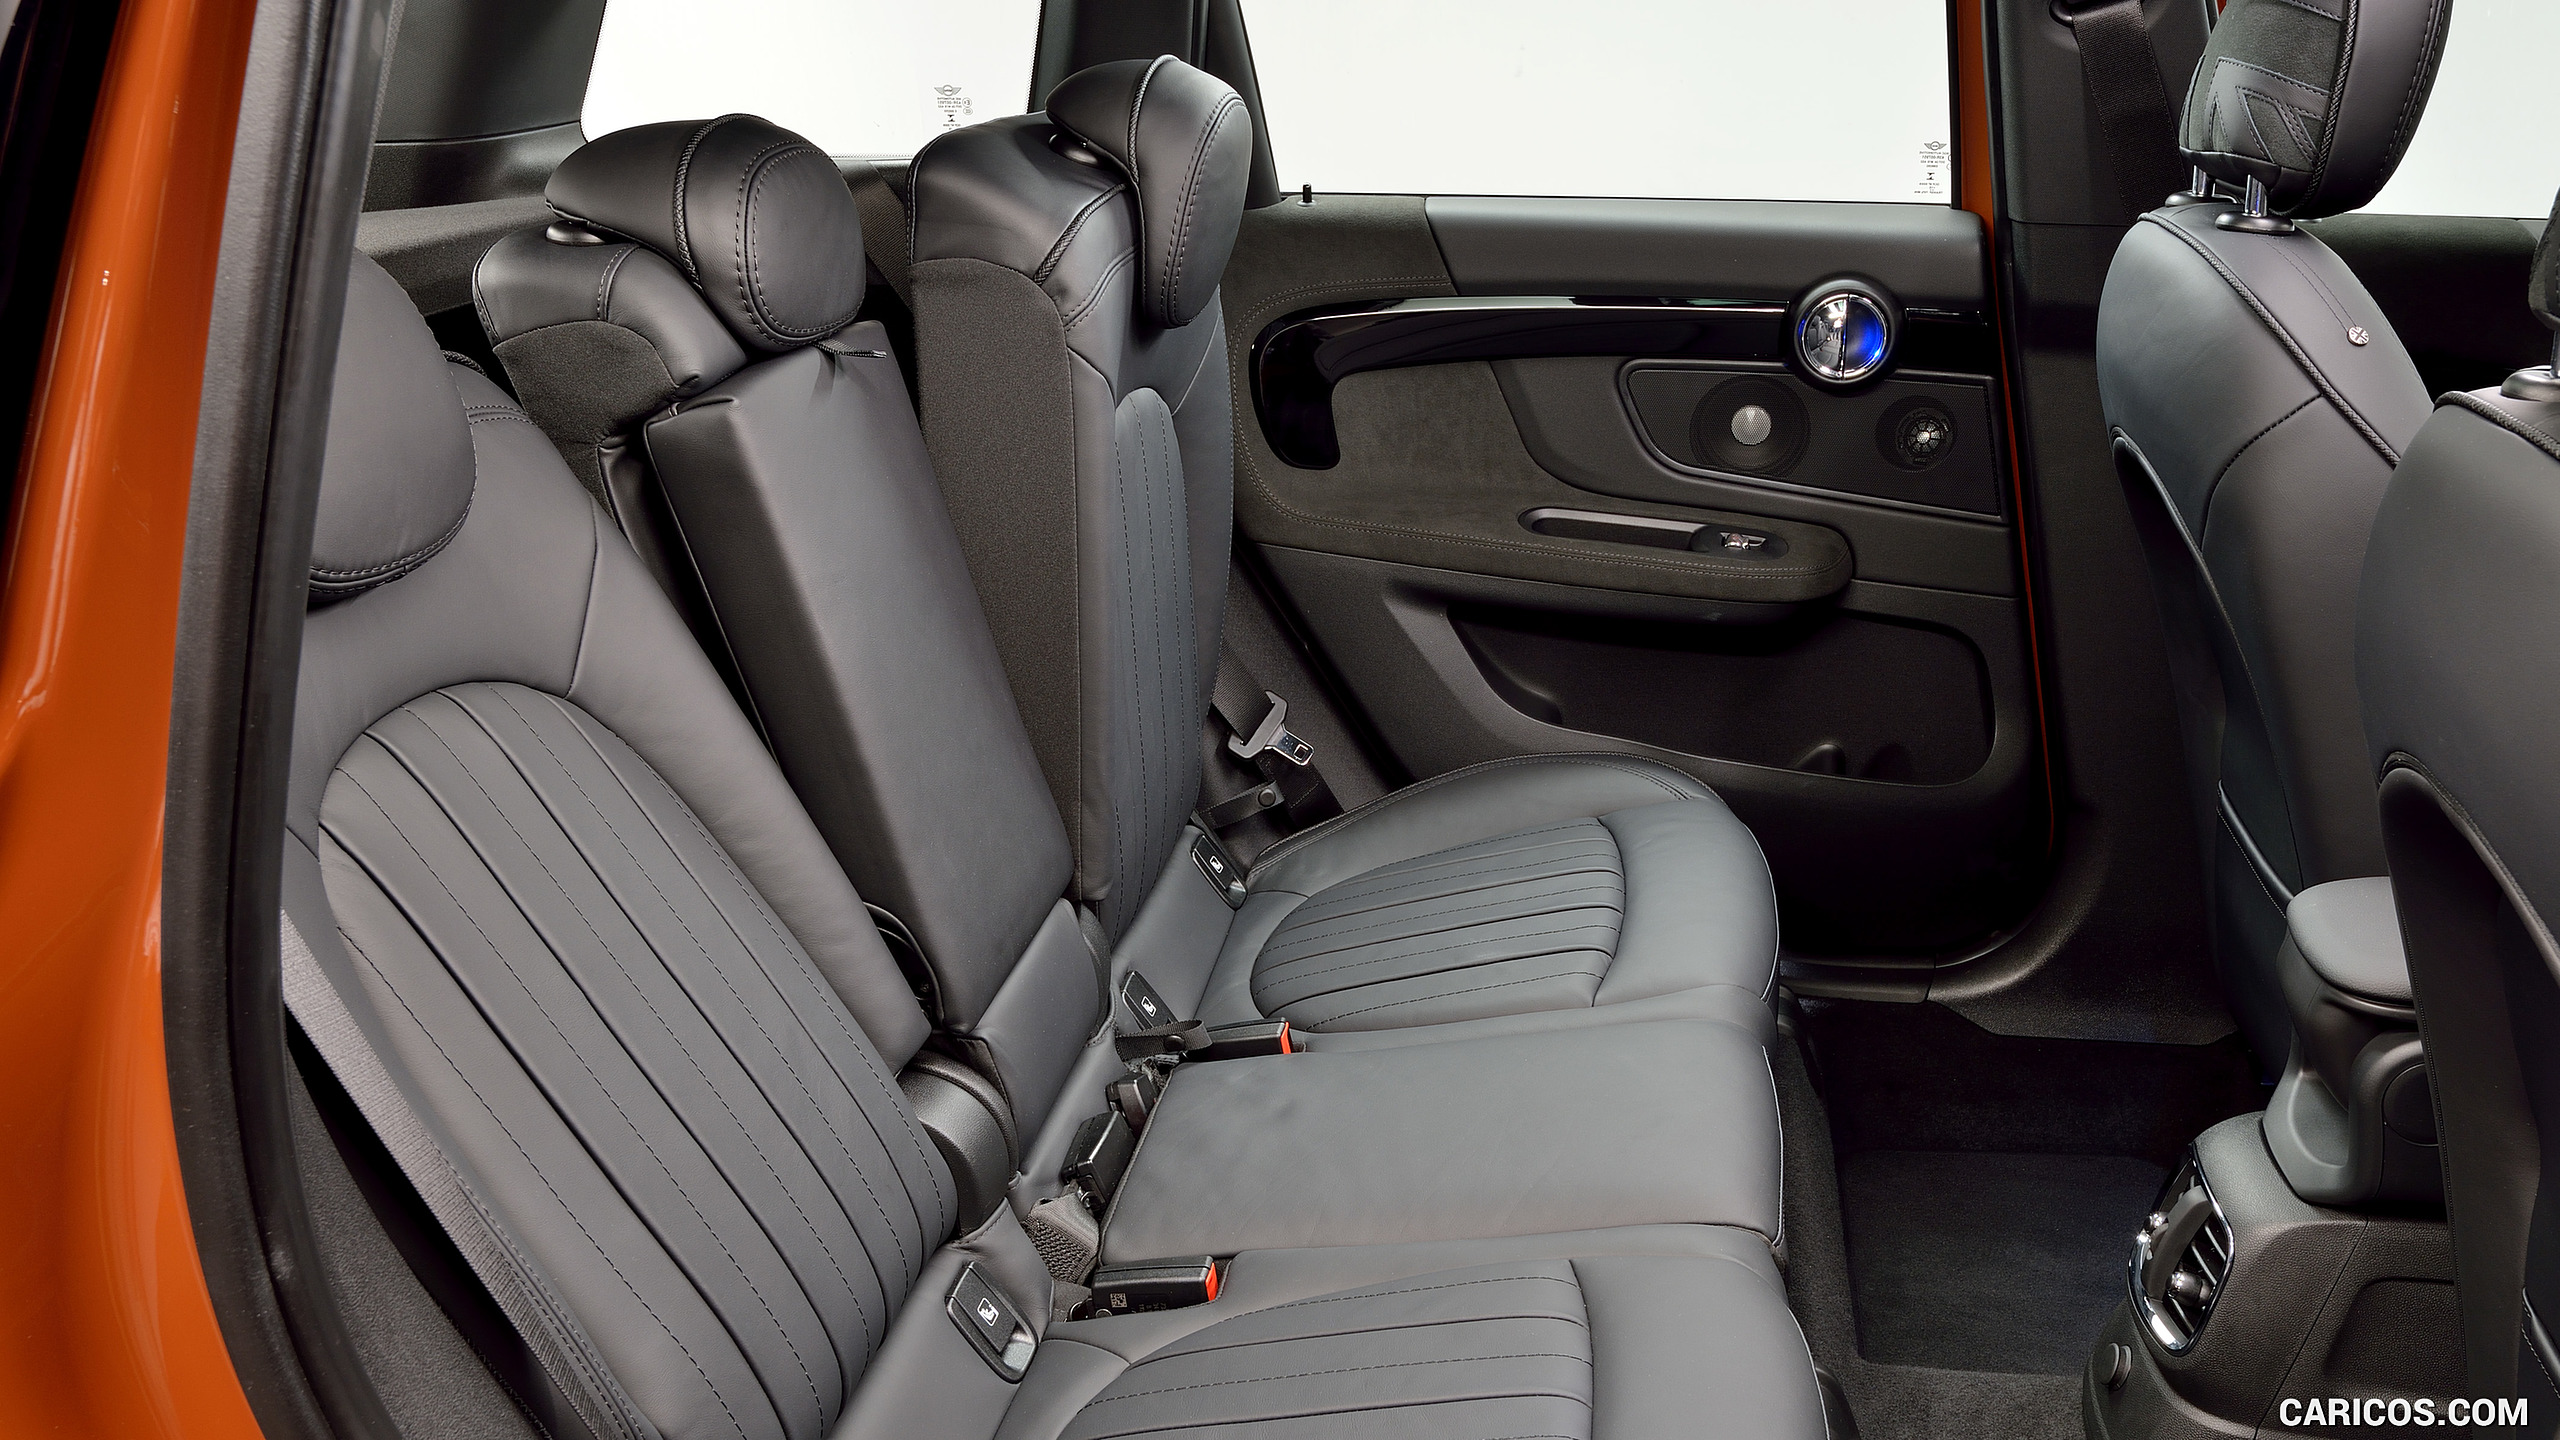 2017 MINI Cooper S Countryman ALL4 - Interior, Rear Seats, #237 of 372